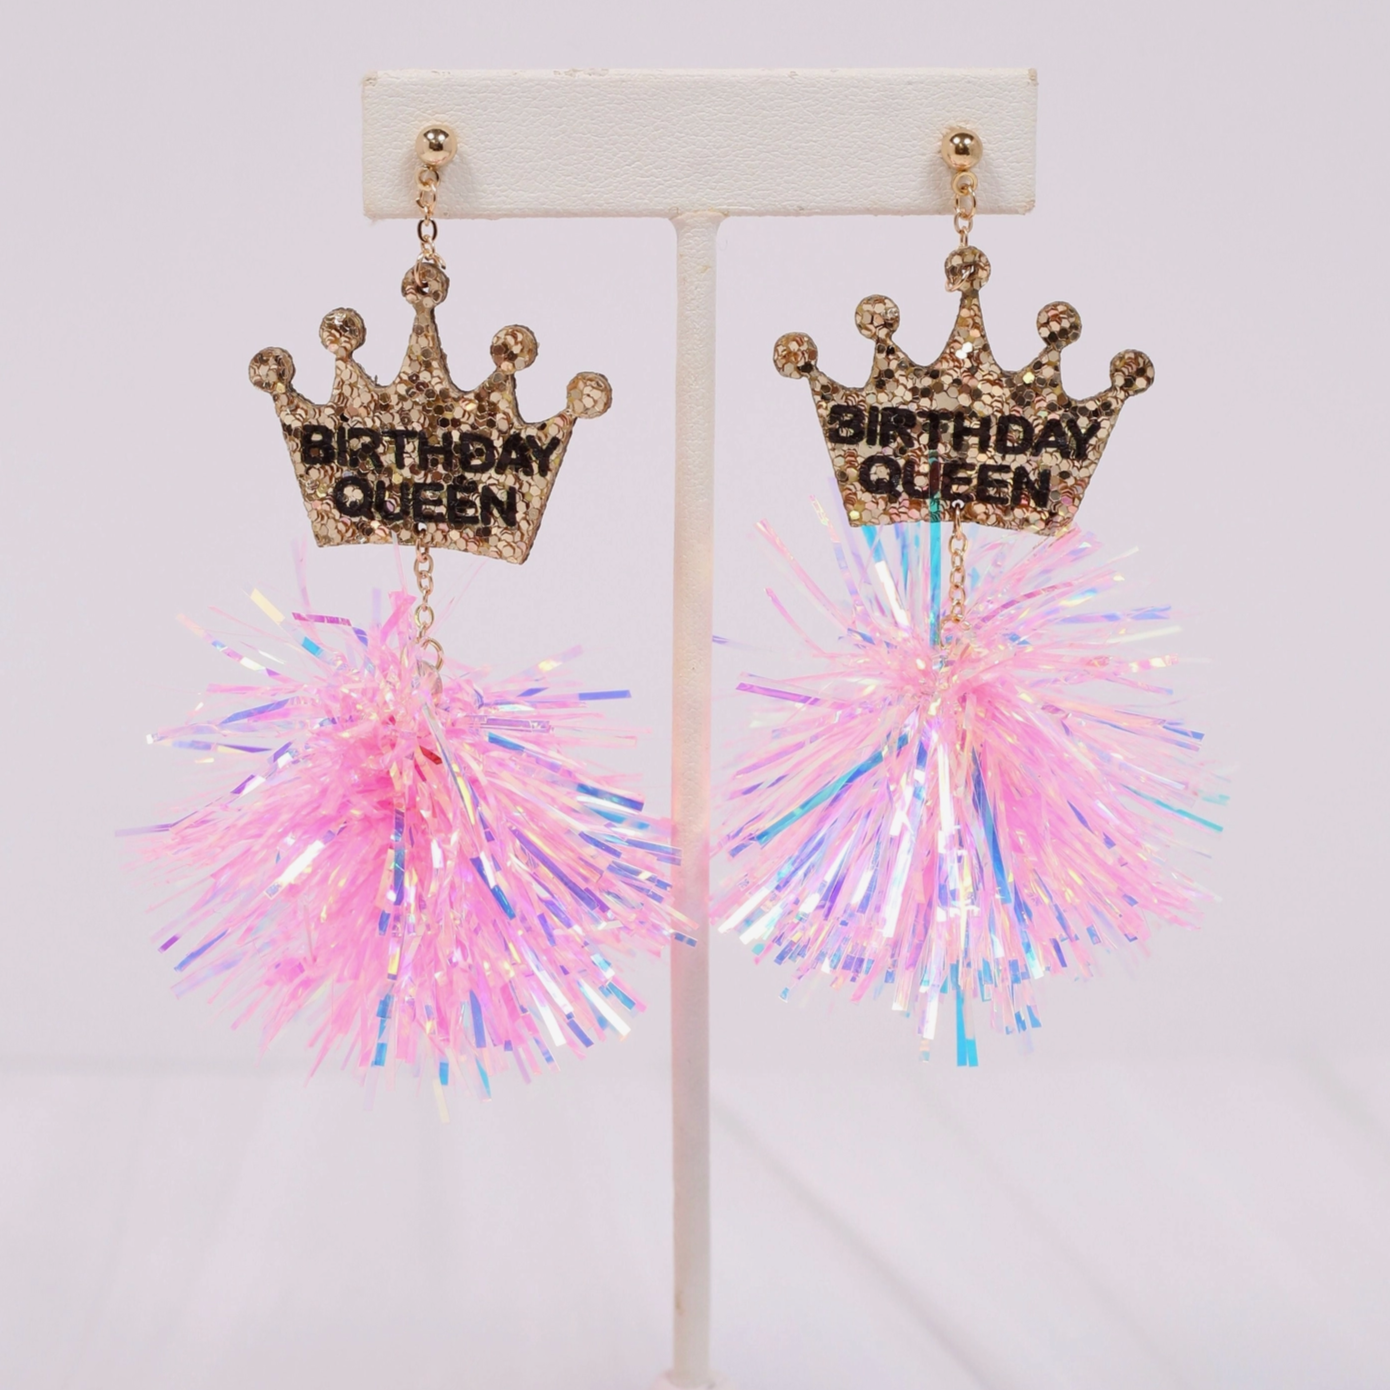 Birthday Queen Pom Pom Earrings